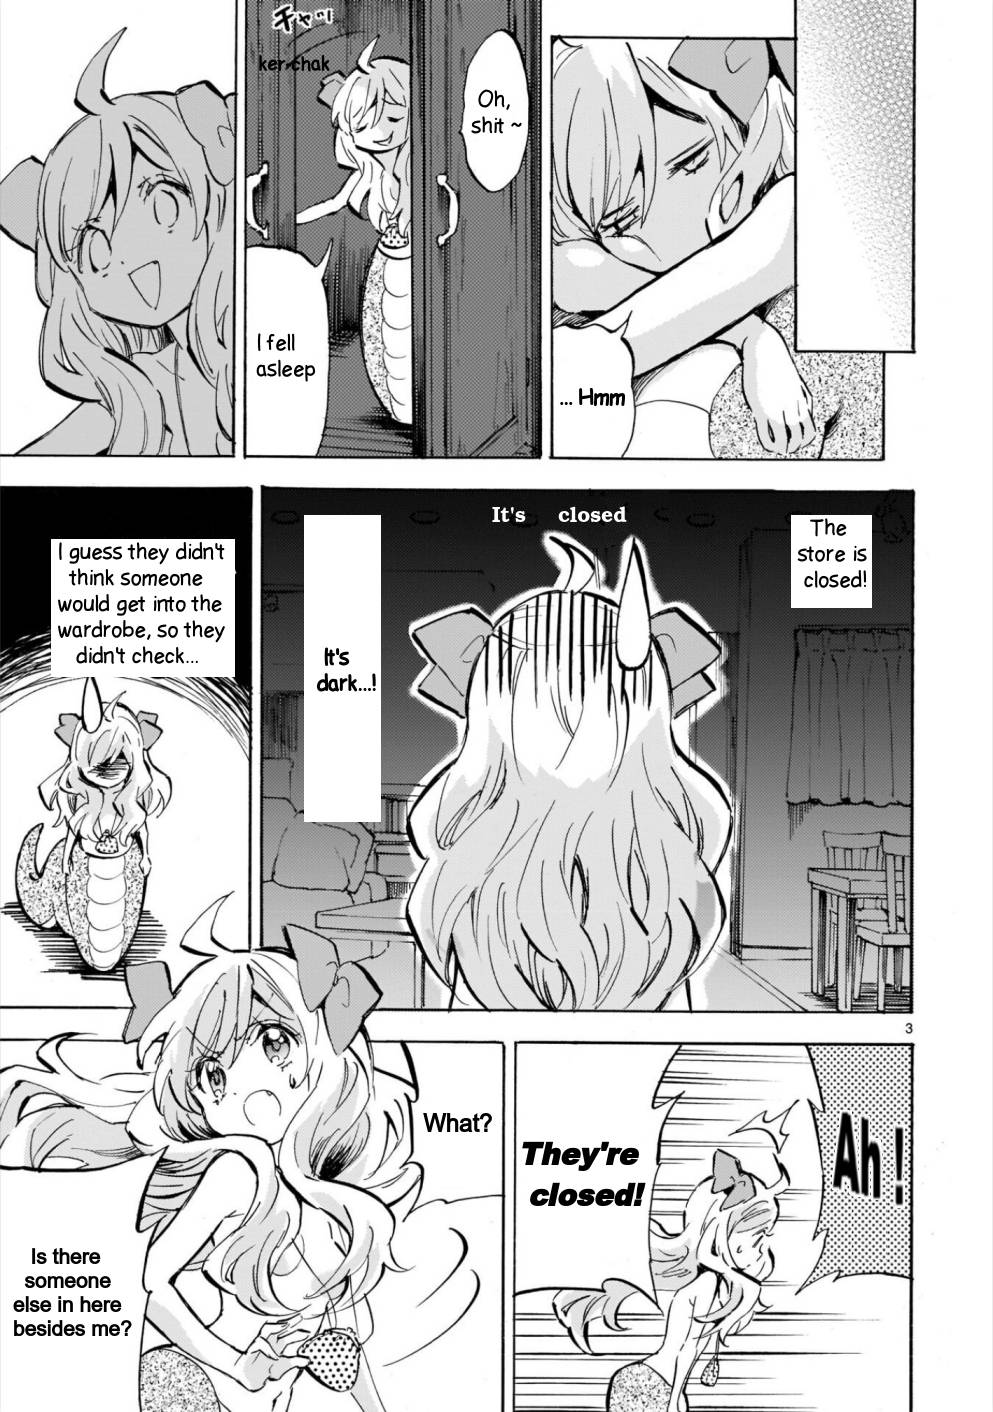 Jashin-chan Dropkick chapter 181 page 3